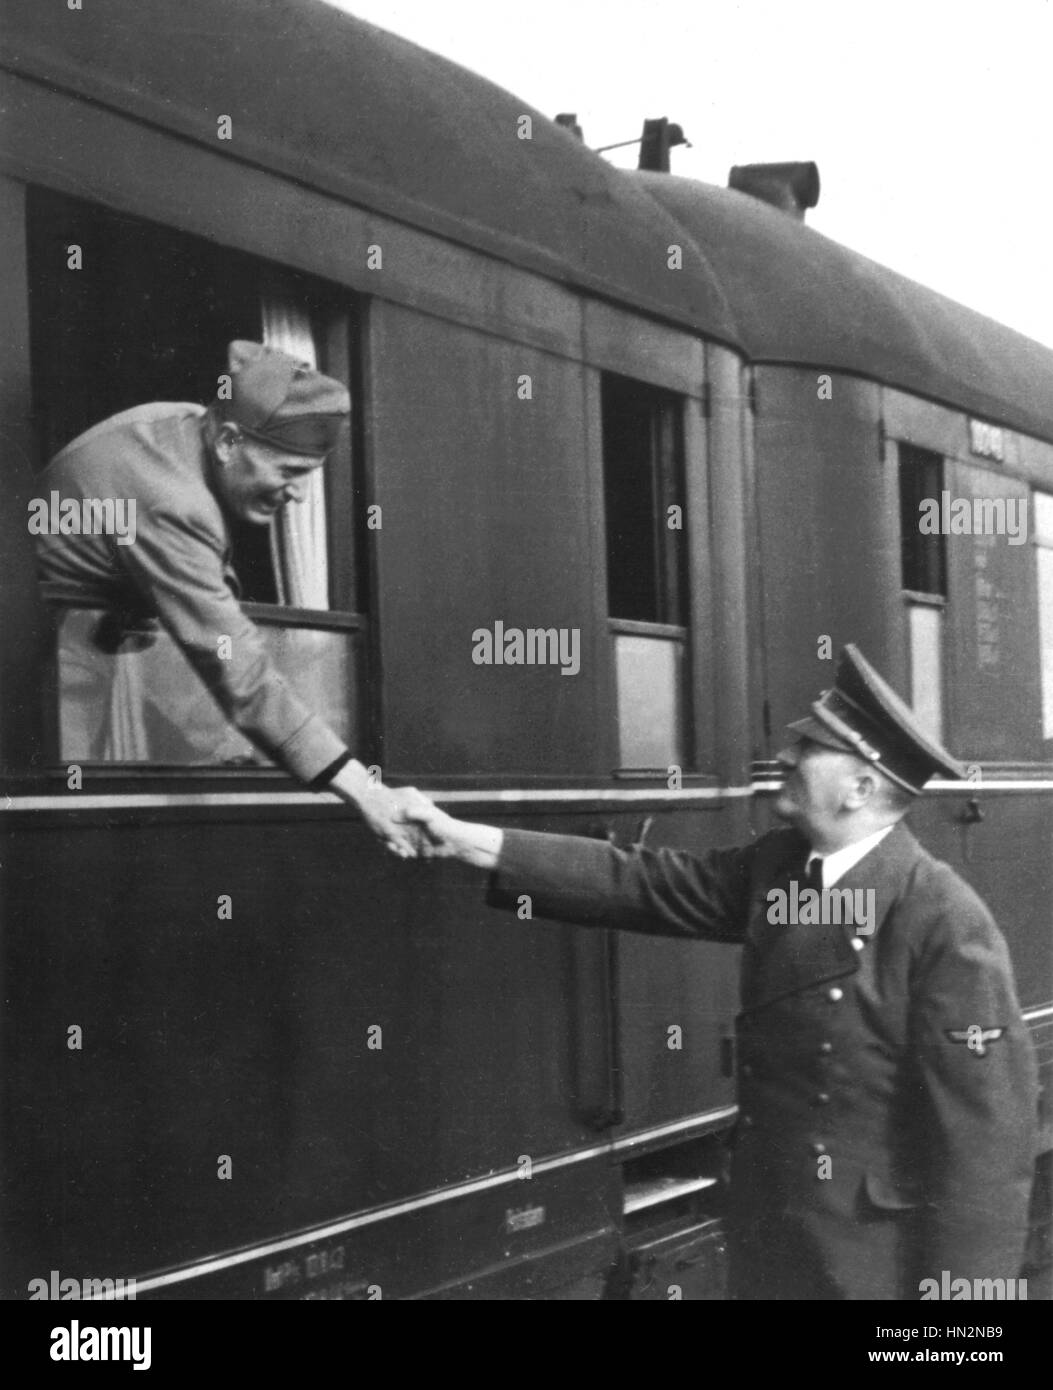 À la gare, Hitler dit adieu à Mussolini le 22 avril ou 23, 1944 Allemagne - Seconde Guerre mondiale Banque D'Images